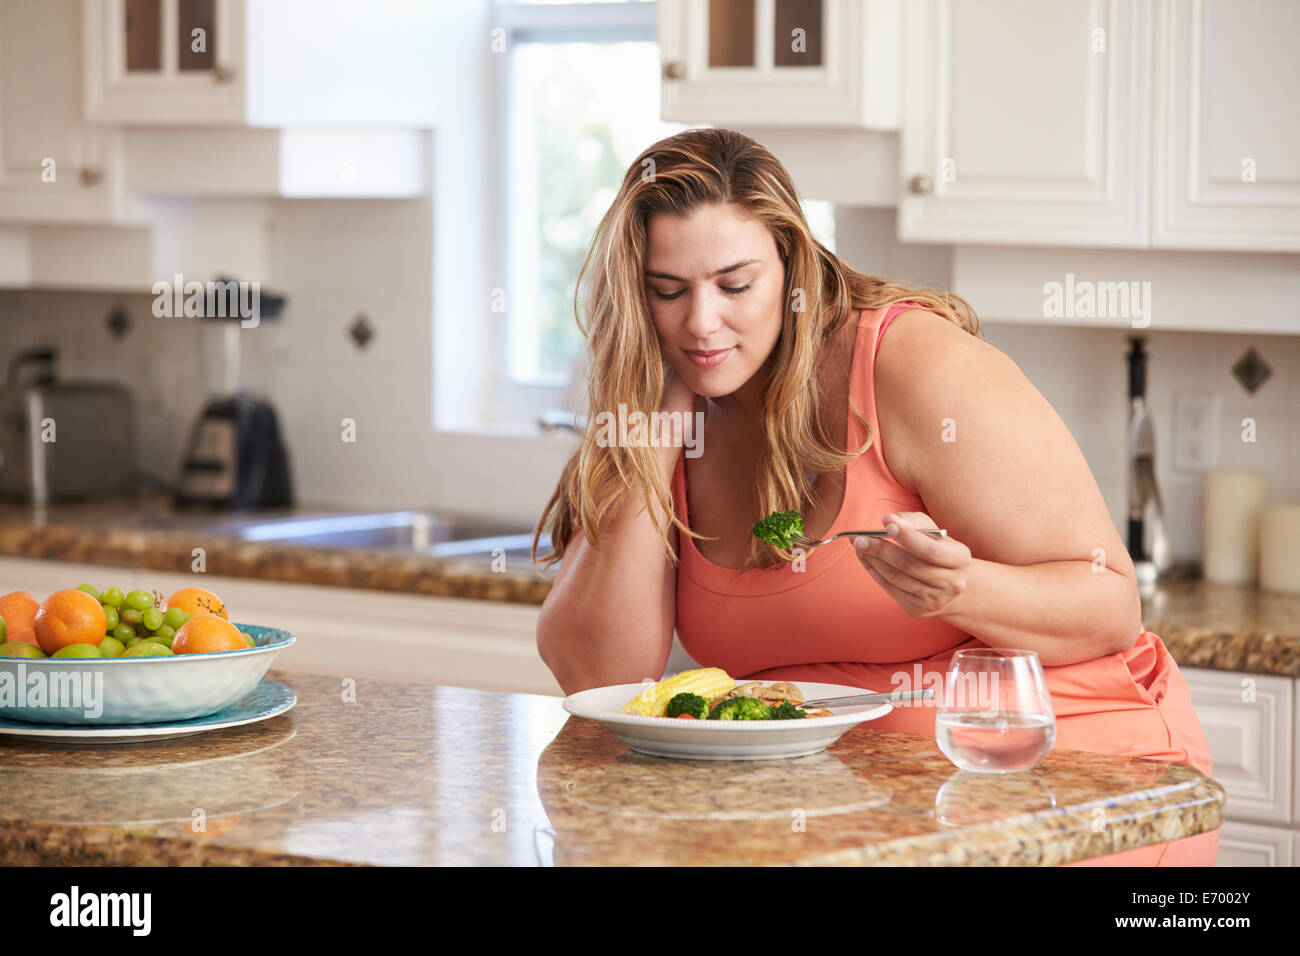 Übergewichtige Frau gesund essen In der Küche Stockfoto